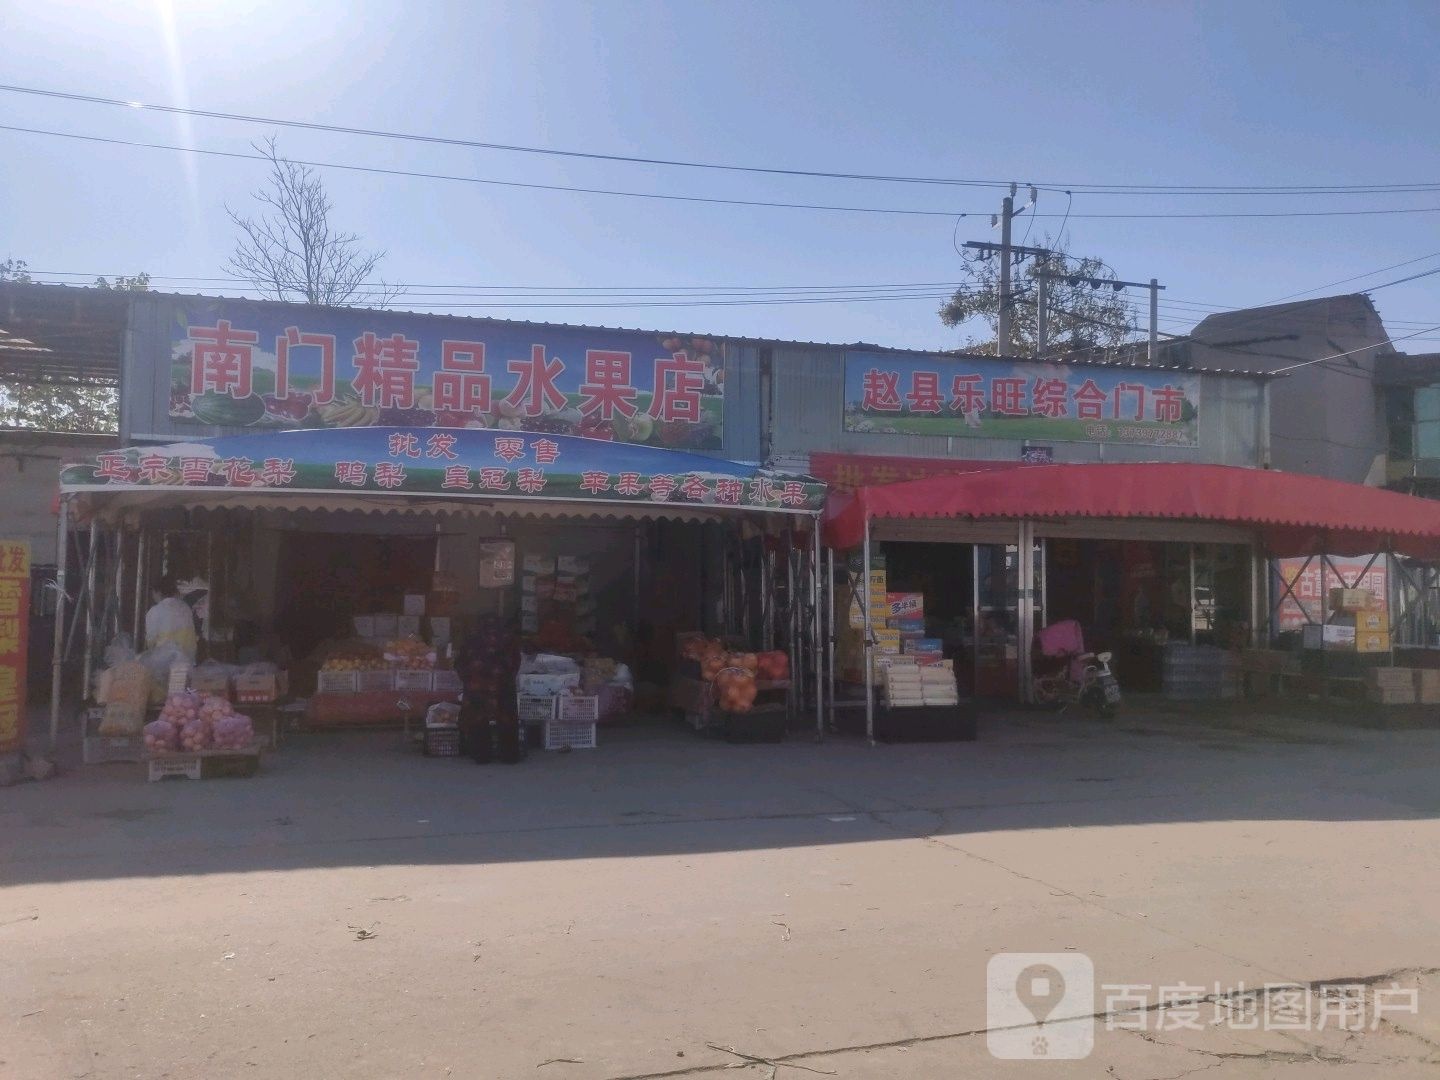 石家庄市赵县安济大道与南环路交叉路口往北约150米